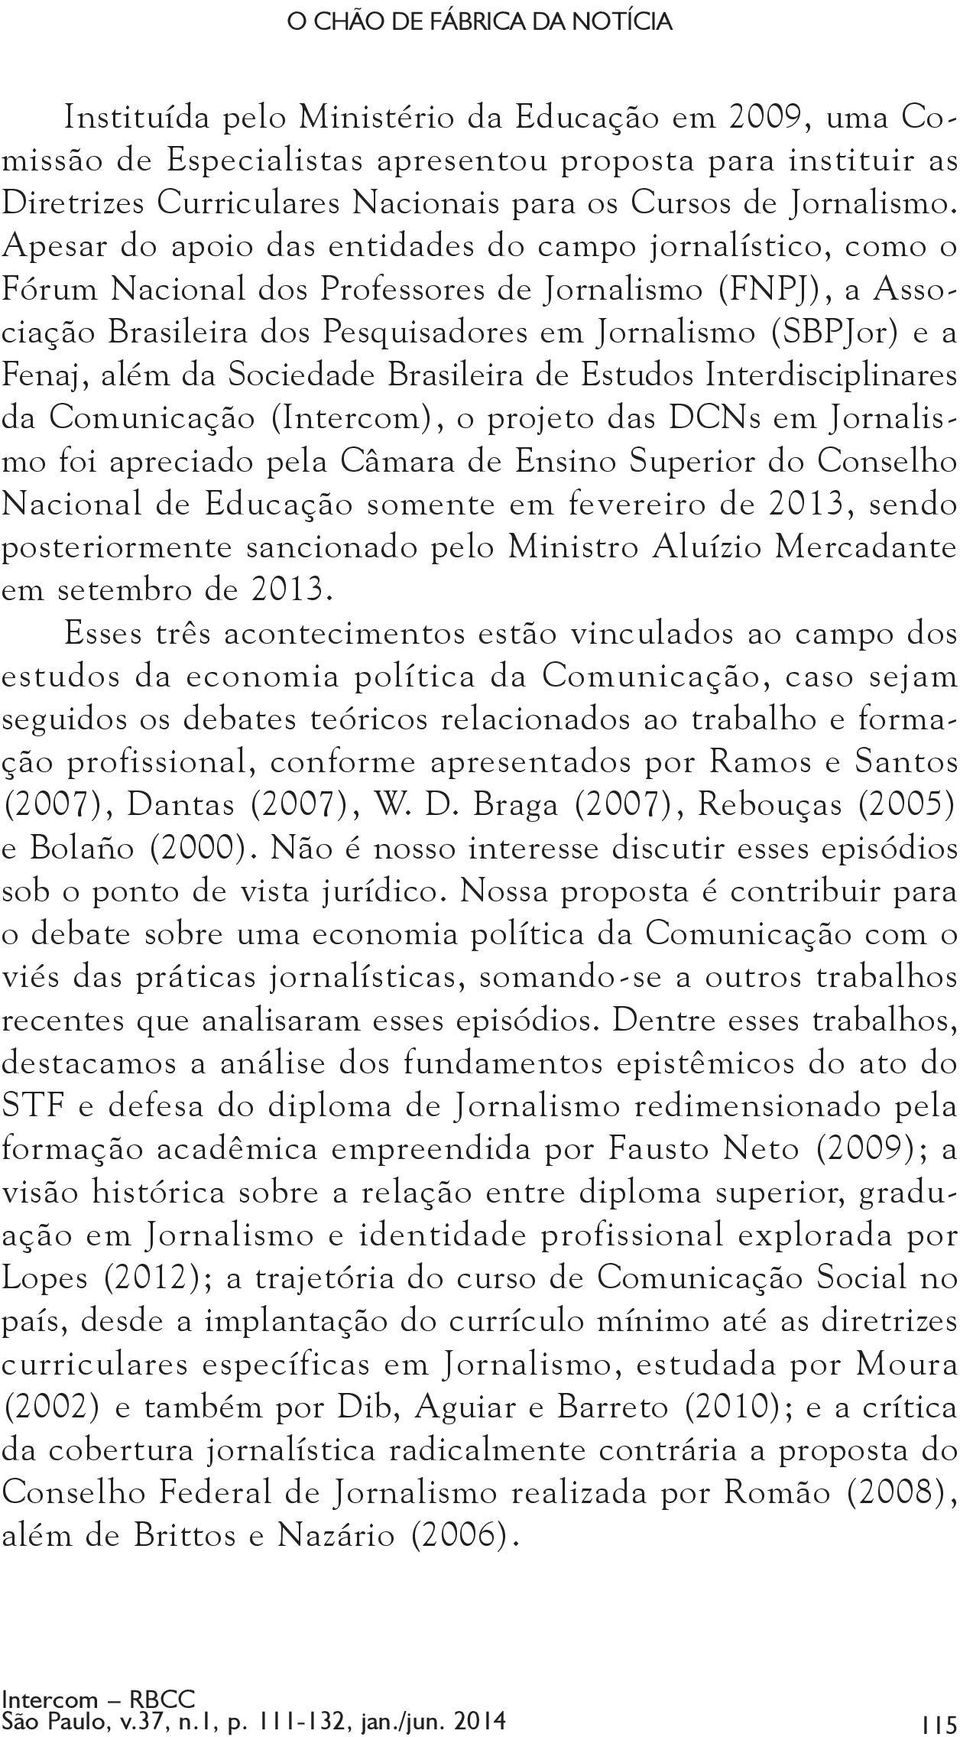 Apesar do apoio das entidades do campo jornalístico, como o Fórum Nacional dos Professores de Jornalismo (FNPJ), a Associação Brasileira dos Pesquisadores em Jornalismo (SBPJor) e a Fenaj, além da